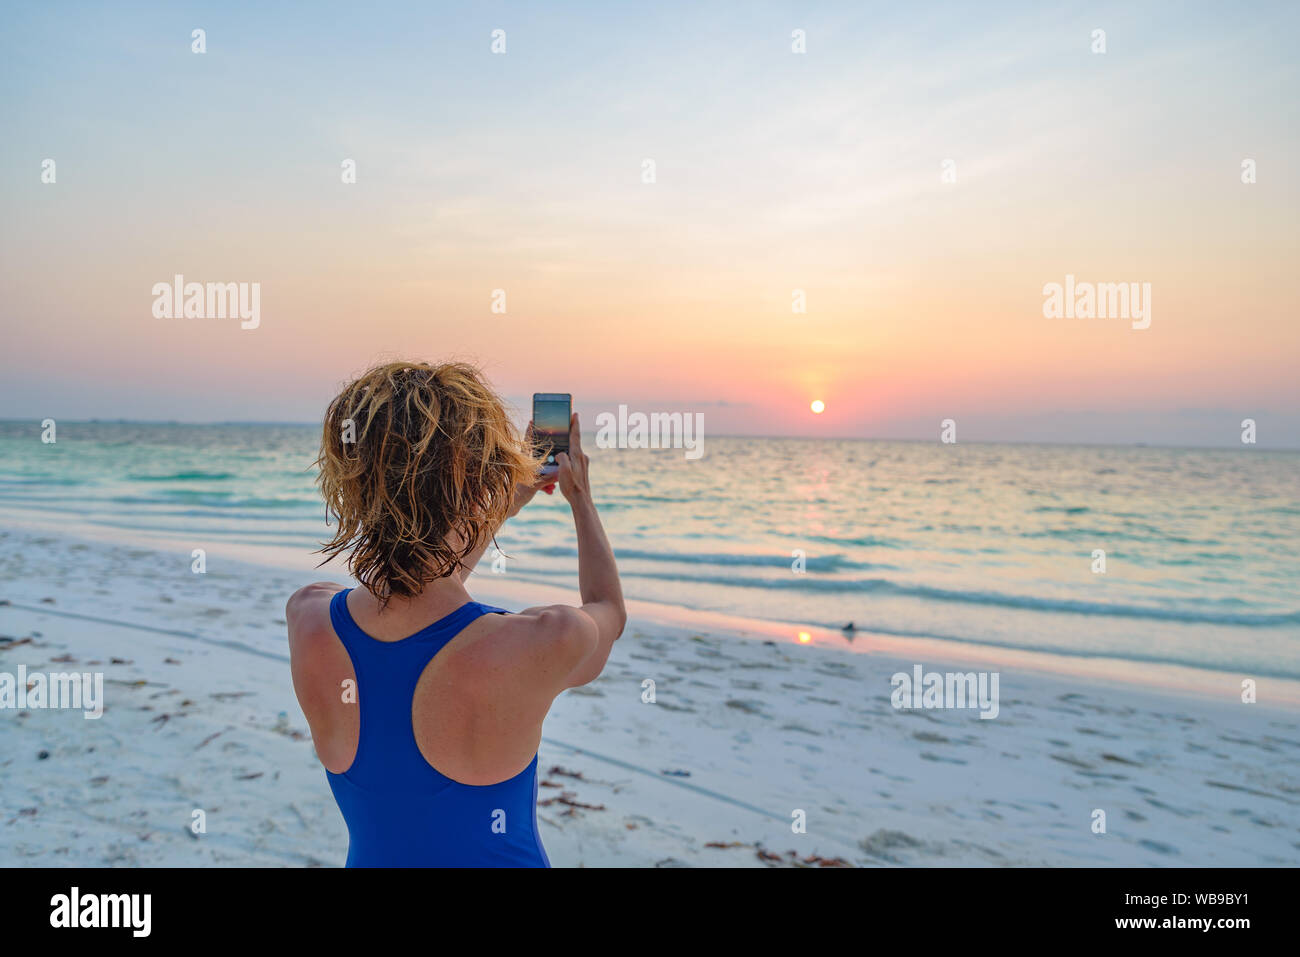 Frau unter Foto mit Smartphone der romantischen Himmel bei Sonnenuntergang auf Sand Strand, Rückansicht, echte Menschen rund um die Welt reisen. Indonesien tropischen dest Stockfoto